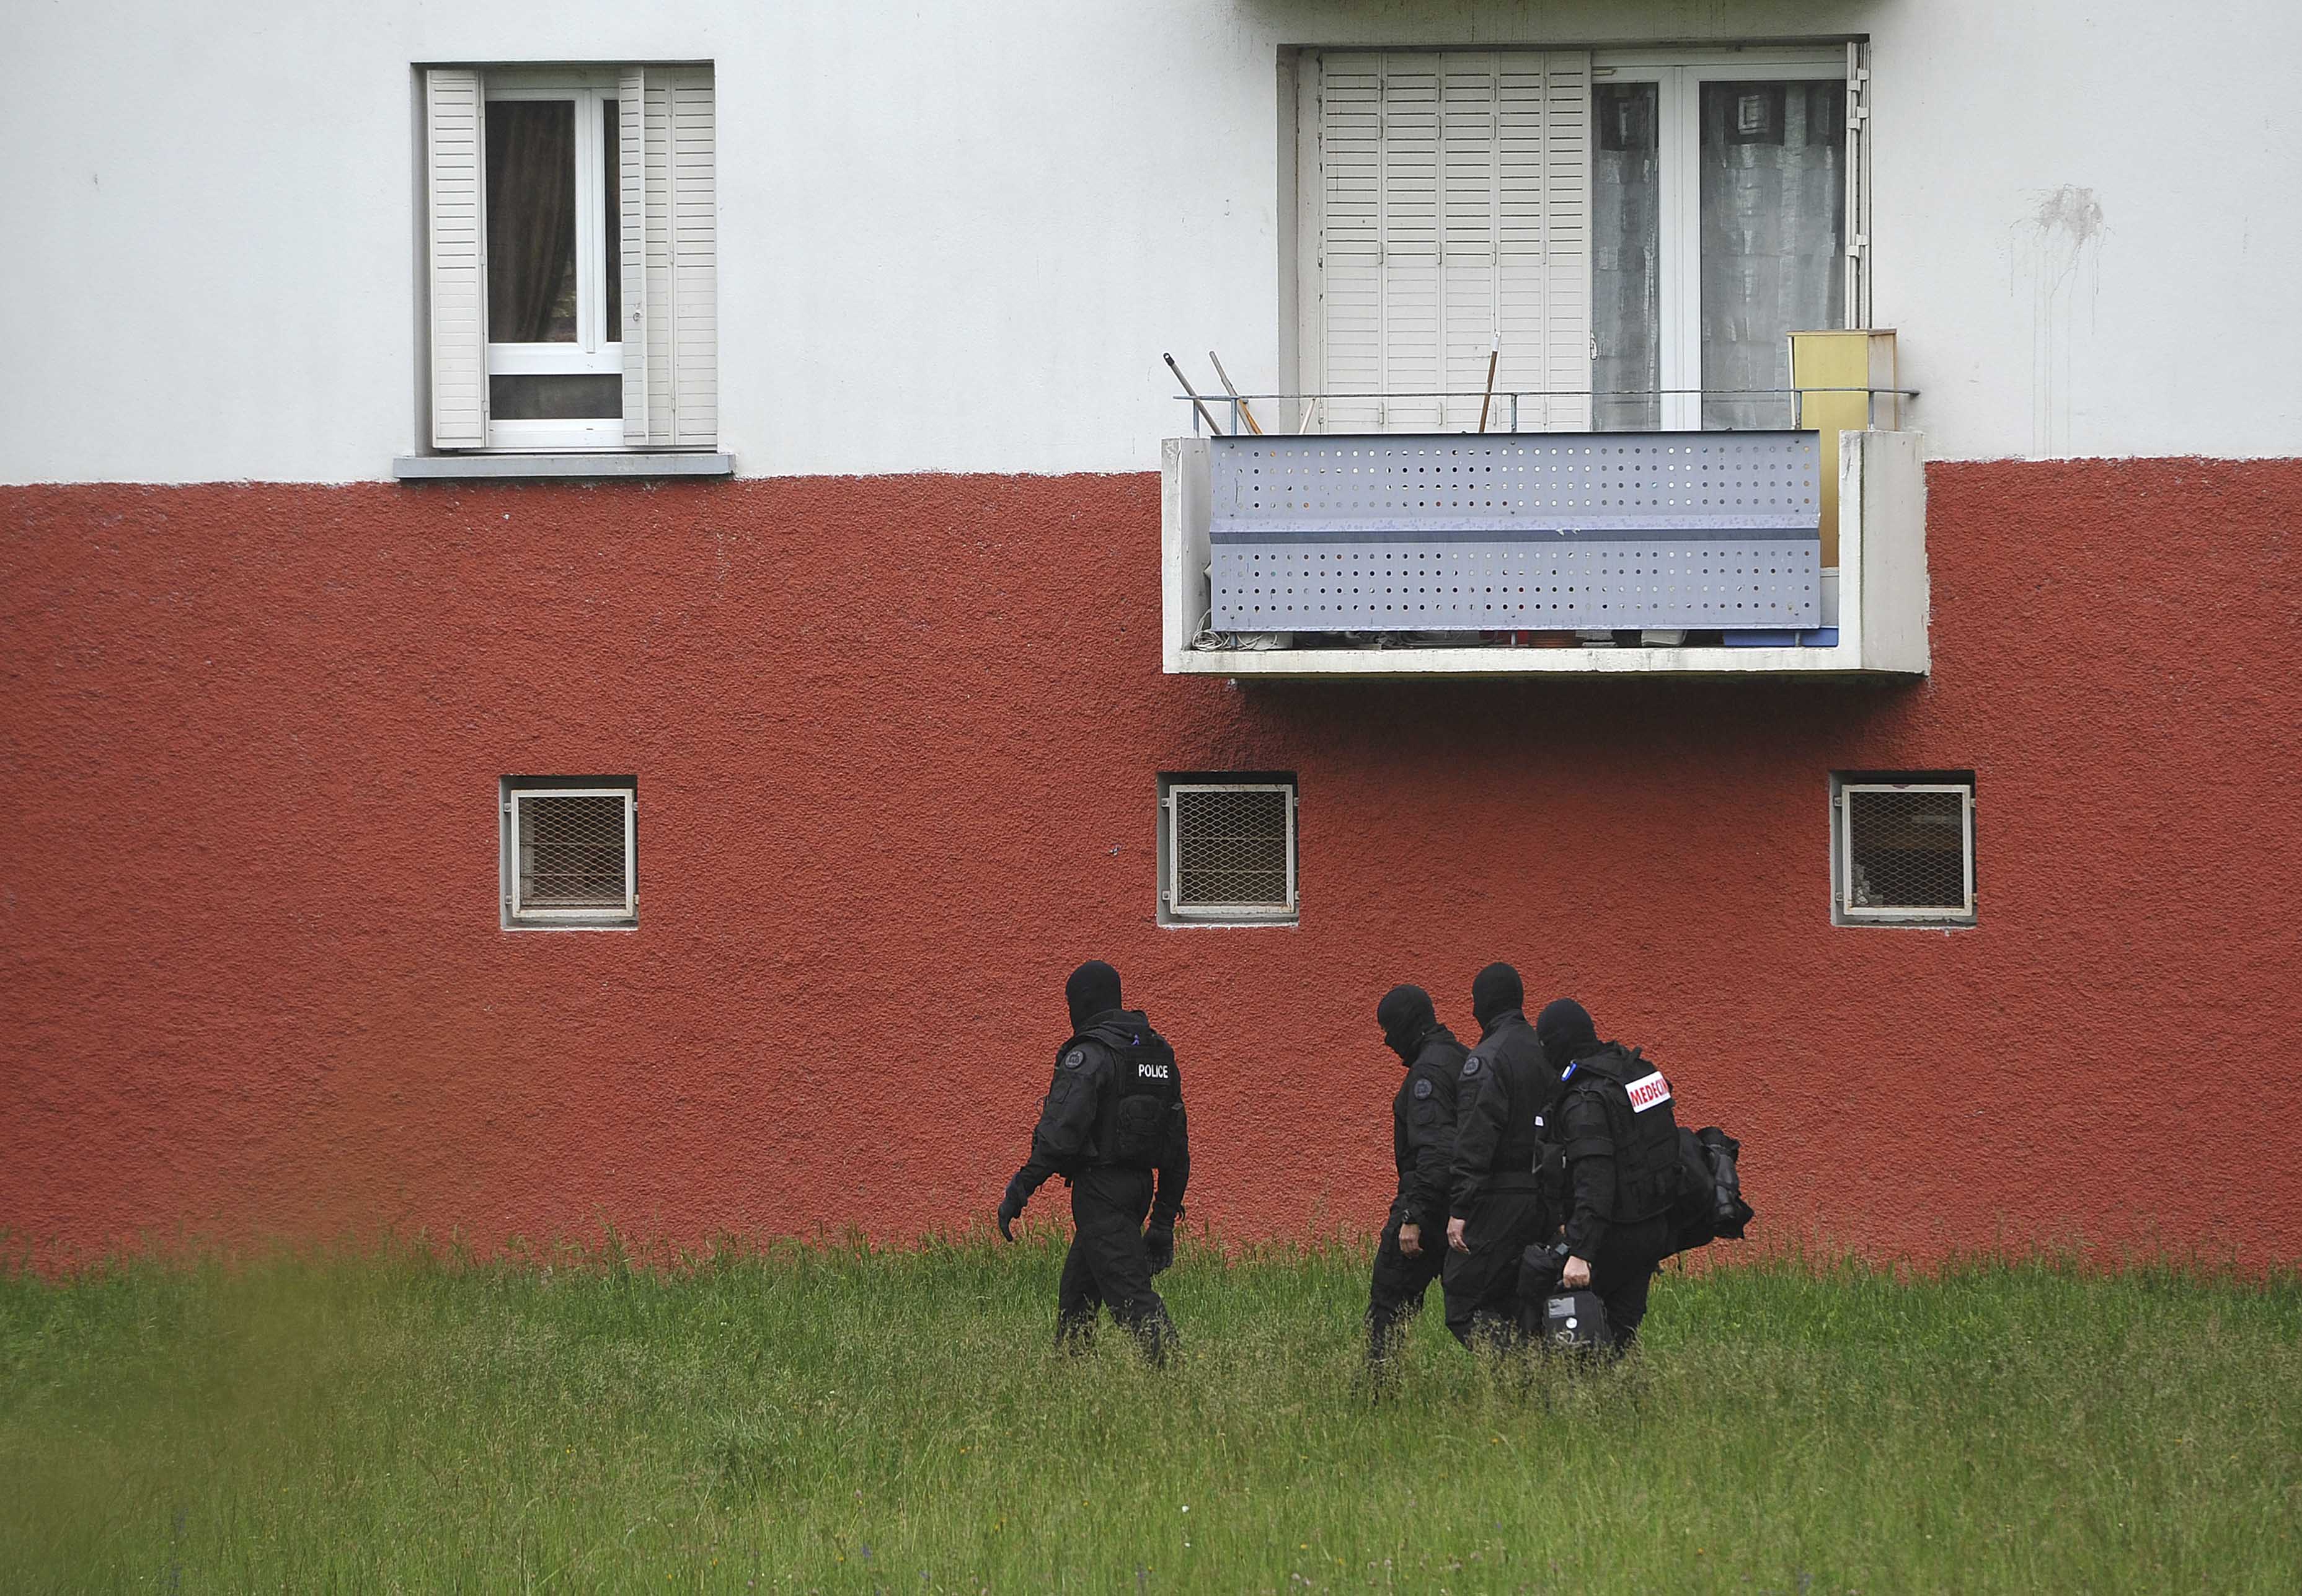 Τέσσερις συλλήψεις στη Γαλλία για σχέσεις με οργανώσεις τζιχαντιστών